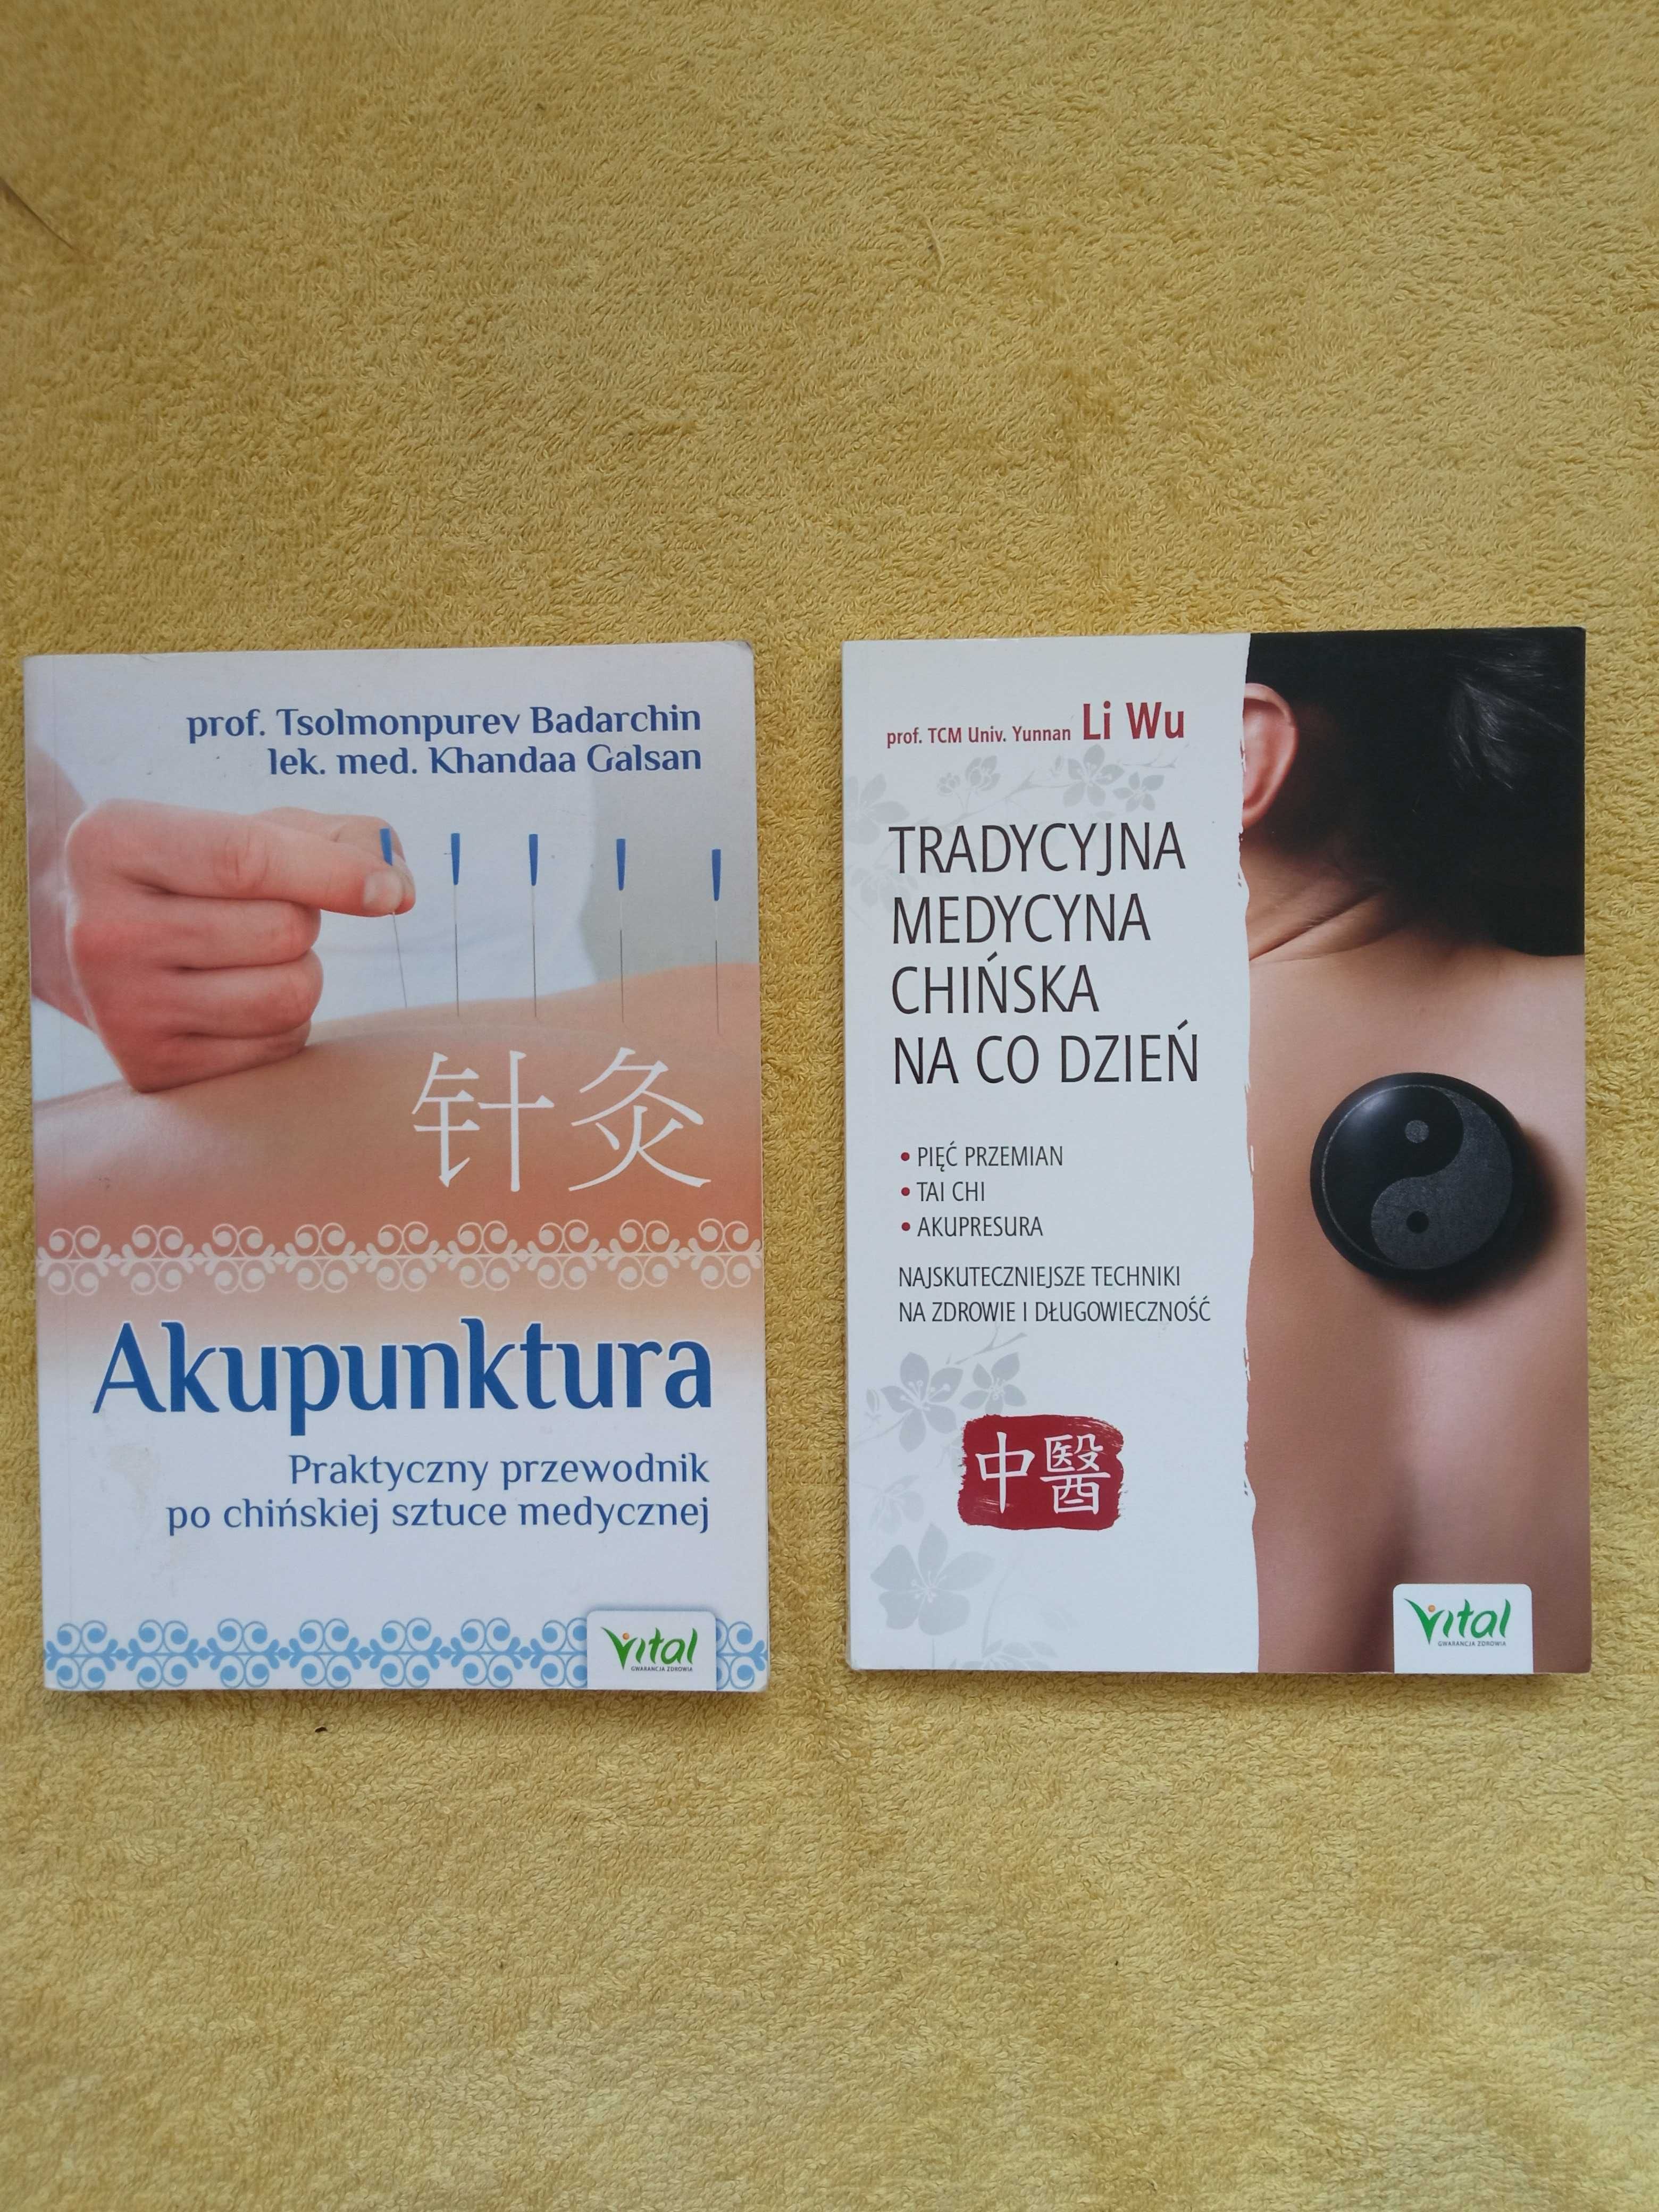 Tradycyjna Medycyna Chińska + Akupunktura